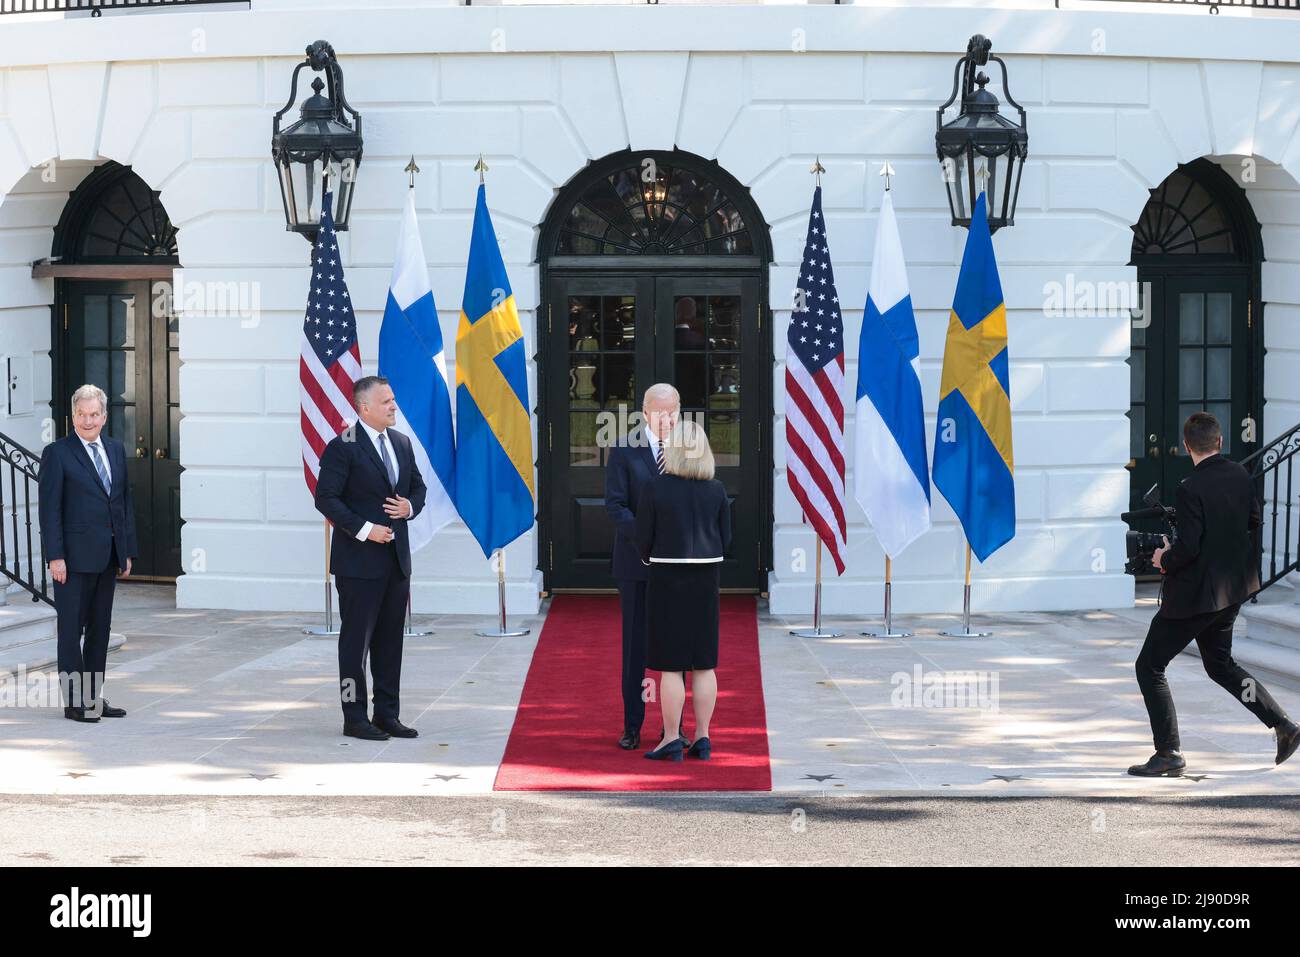 US-Präsident Joe Biden begrüßt am 19. Mai 2022 die schwedische Premierministerin Magdalena Andersson im Weißen Haus in Washington, DC. Foto von Oliver Contreras/Pool/ABACAPRESS.COM Stockfoto